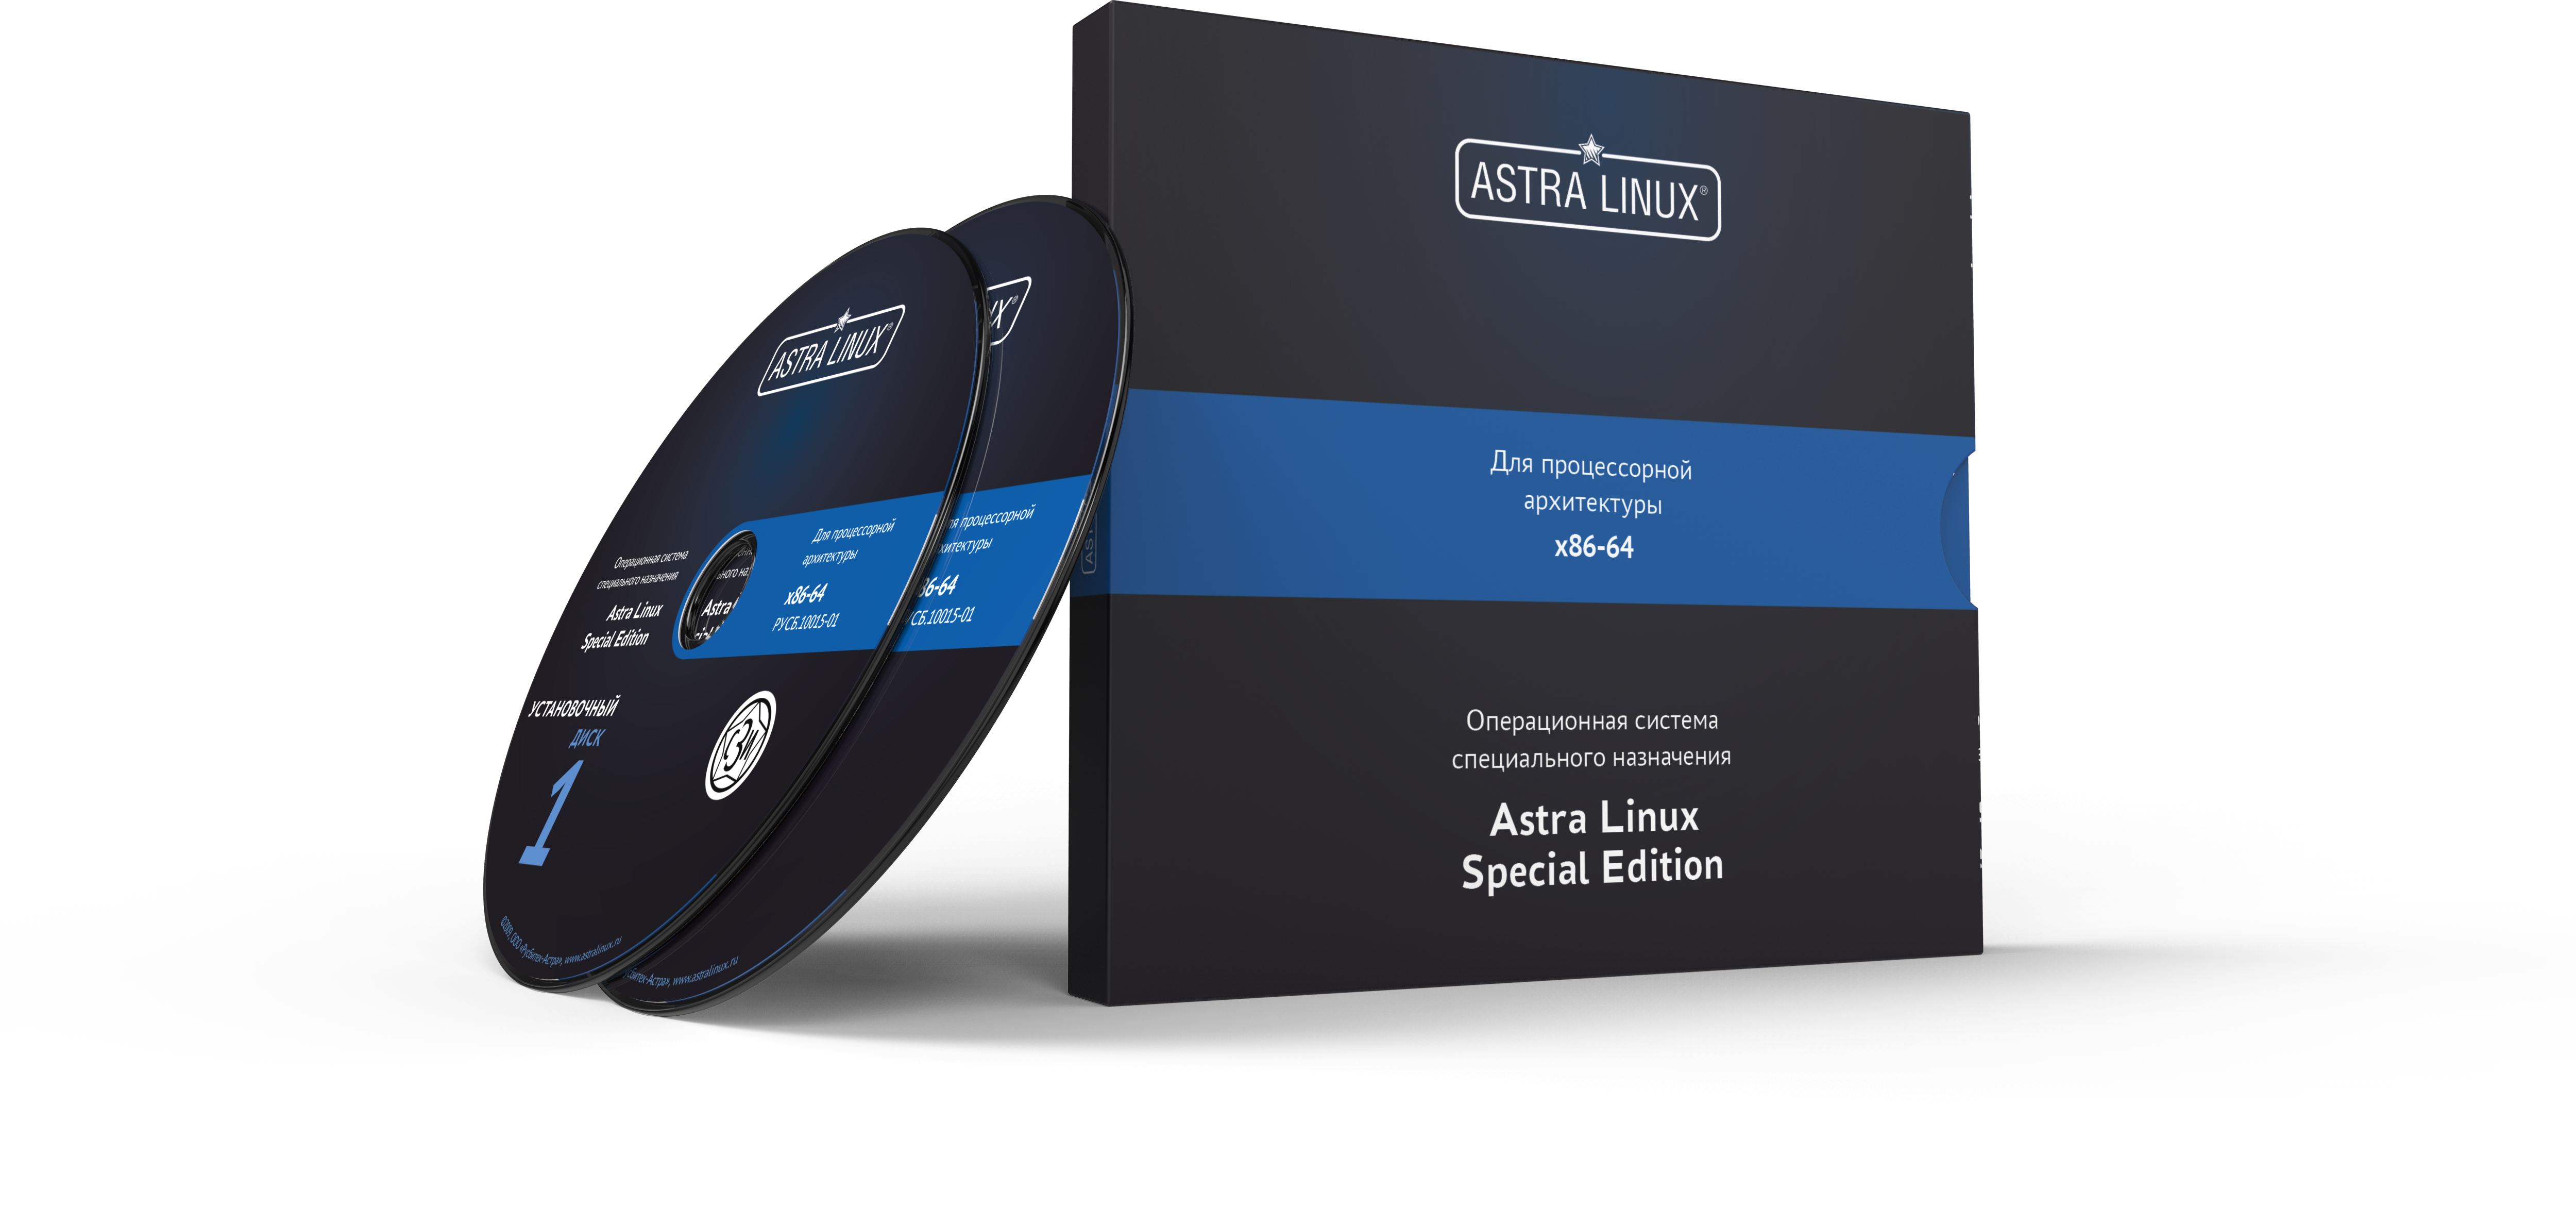 Astra Linux Special Edition 1.7 - Смоленск, "Максимальный", BOX, без огр. срока, ТП "Привилегированная" на 24 мес.